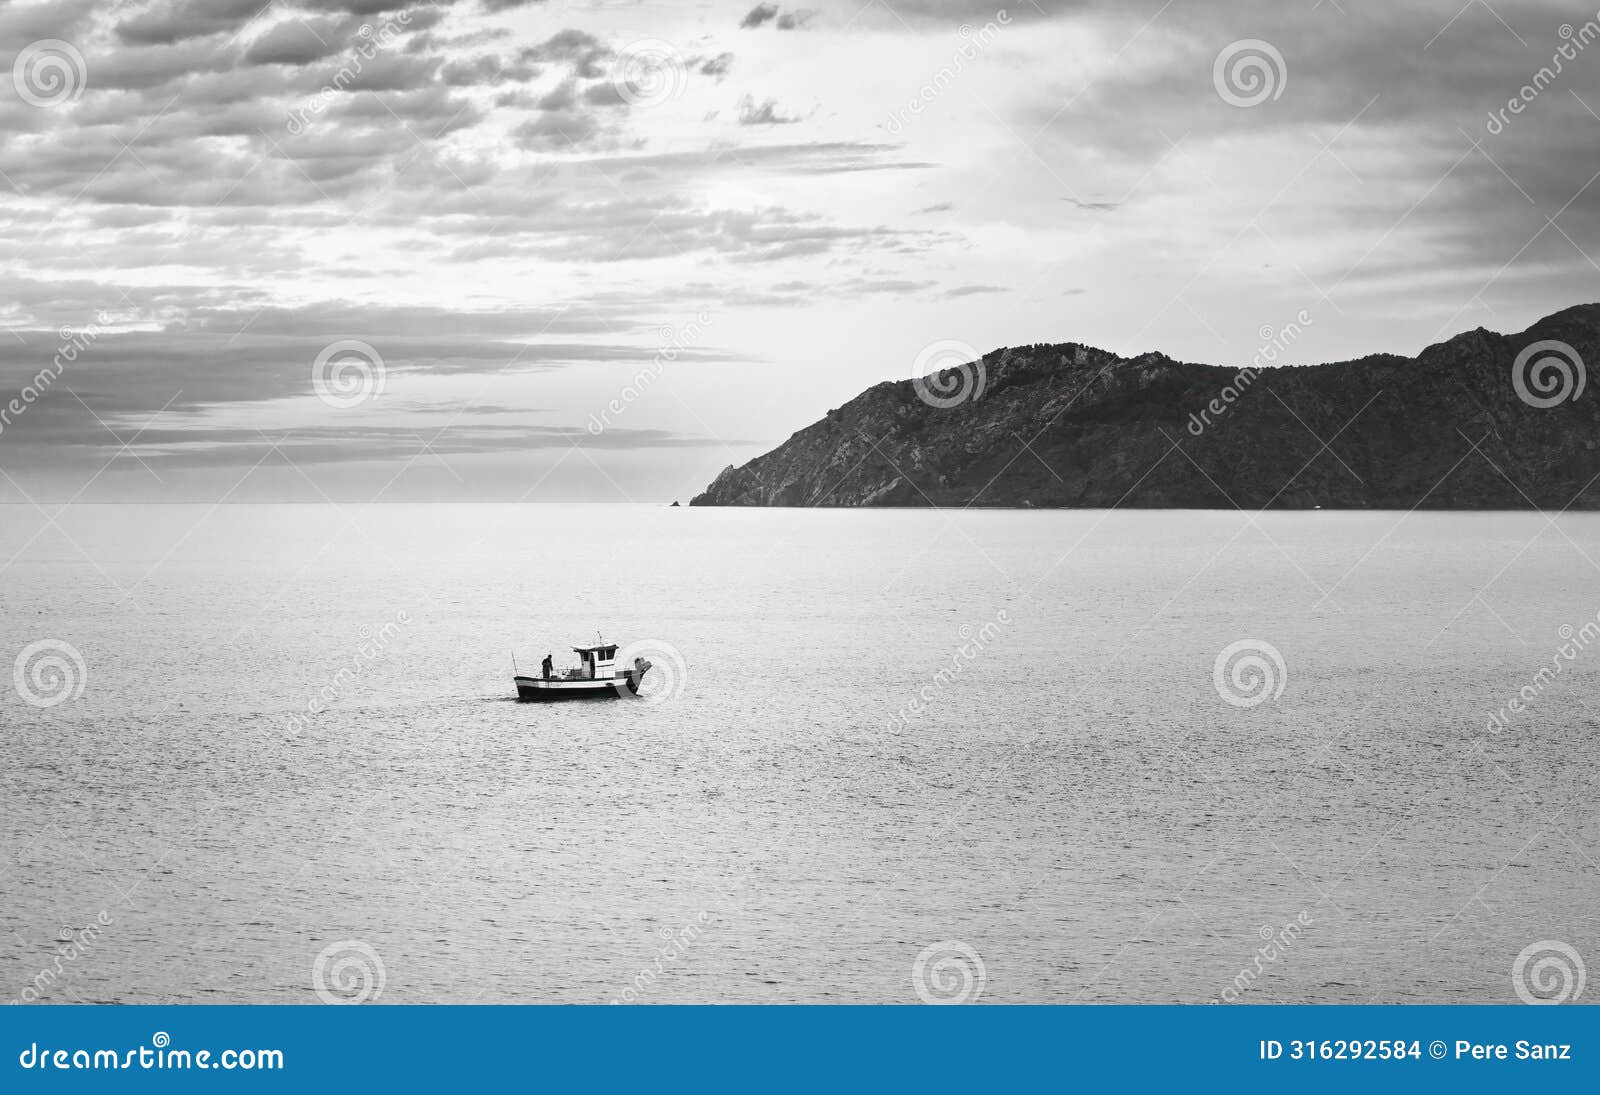 solitary fishing boat at dusk near coastal mountain, catalonia